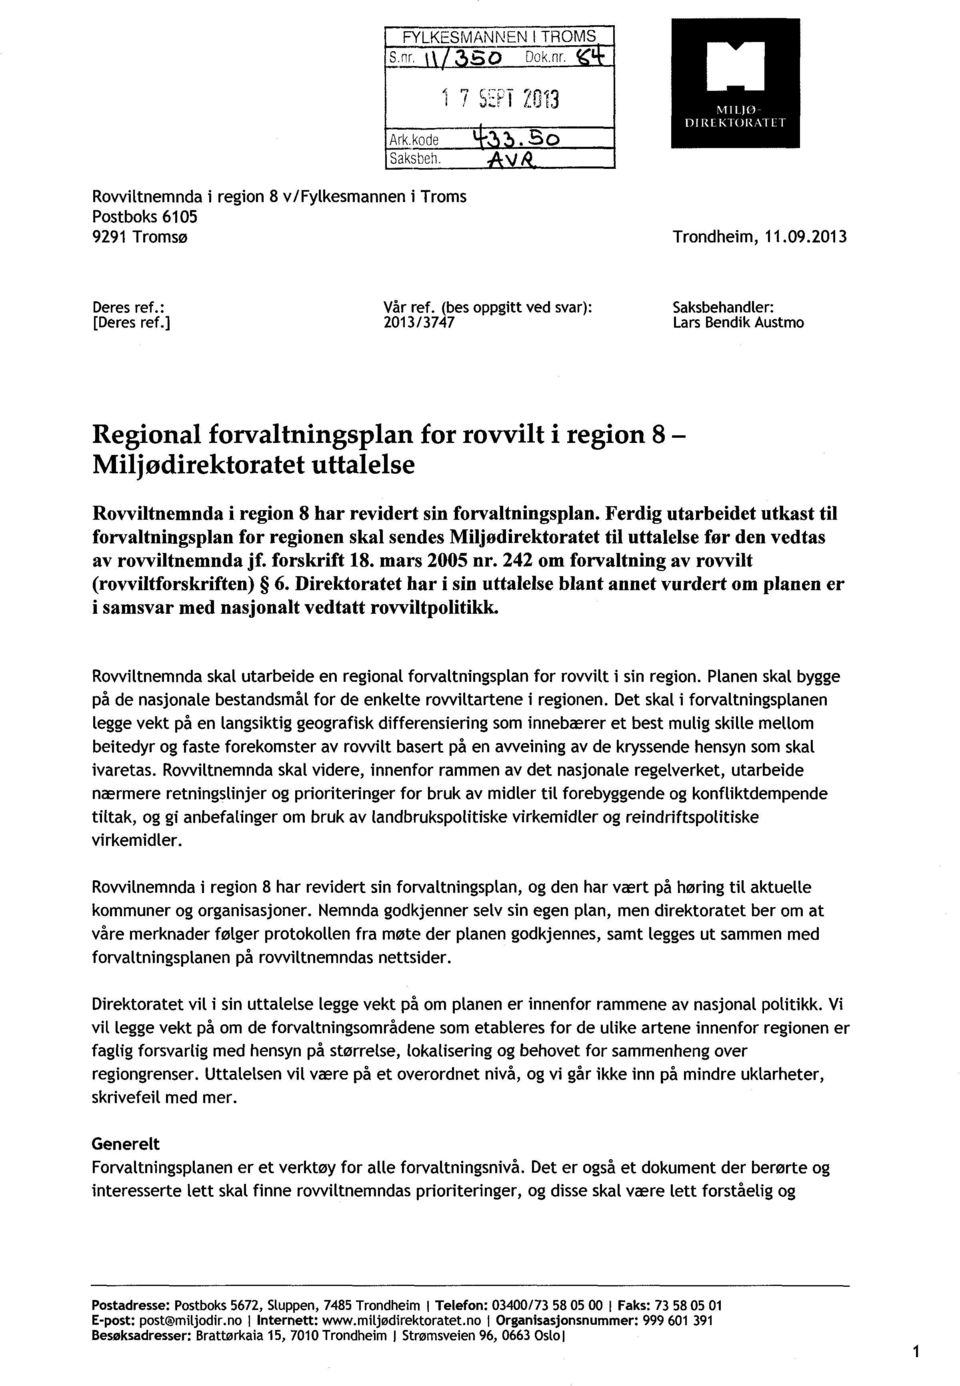 ] 2013/3747 Lars Bendik Austmo Regional forvaltningsplan for rovvilt i region 8 - Miljødirektoratet uttalelse Rovviltnemnda i region 8 har revidert sin forvaltningsplan.